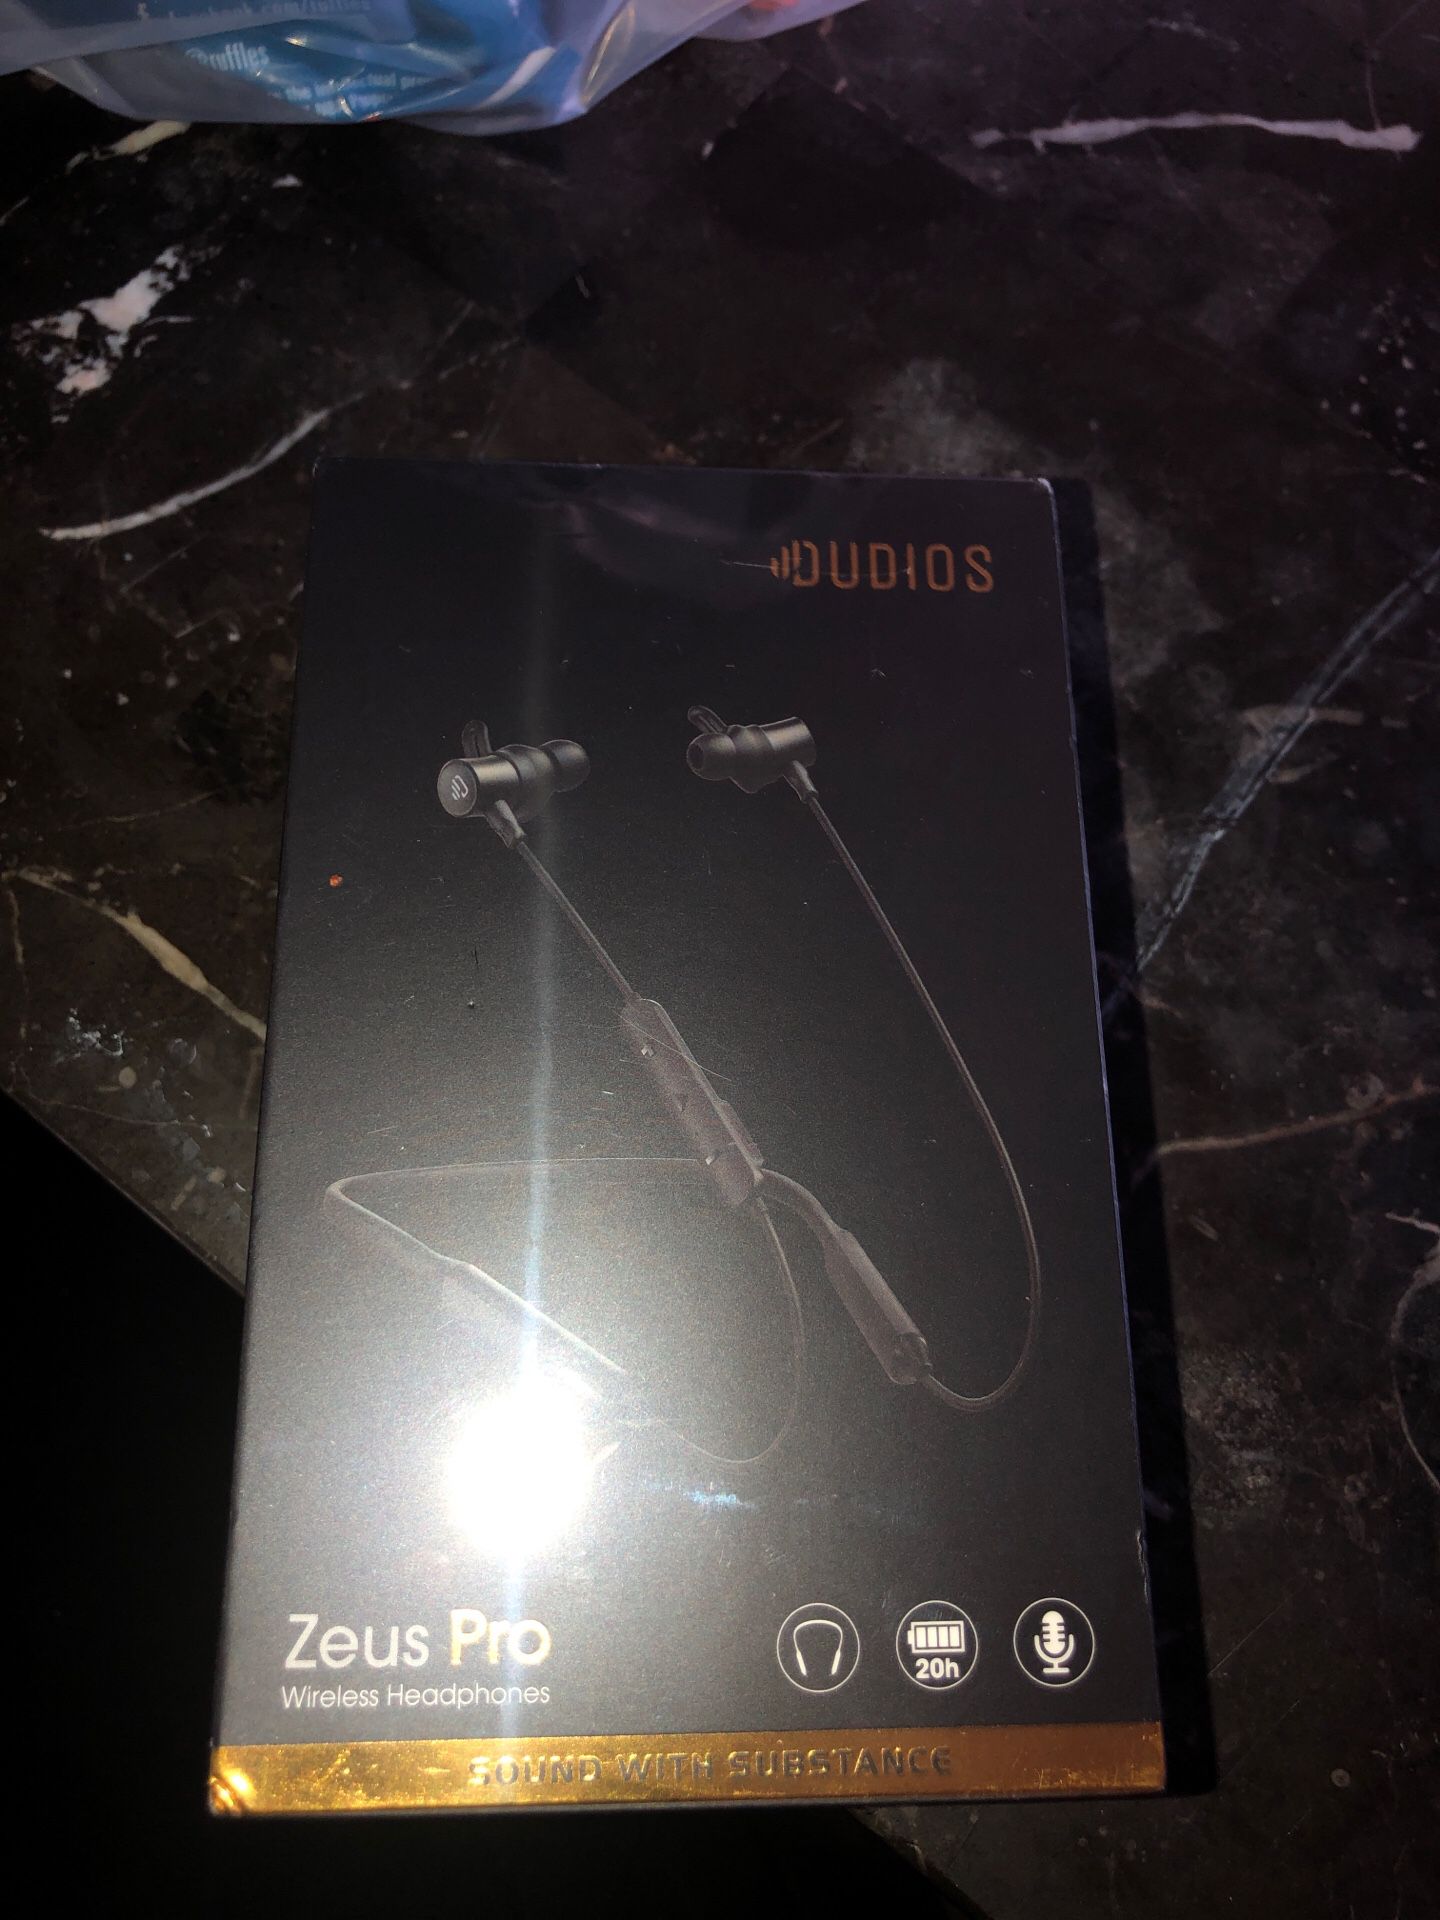 Zeus pro wireless headphones